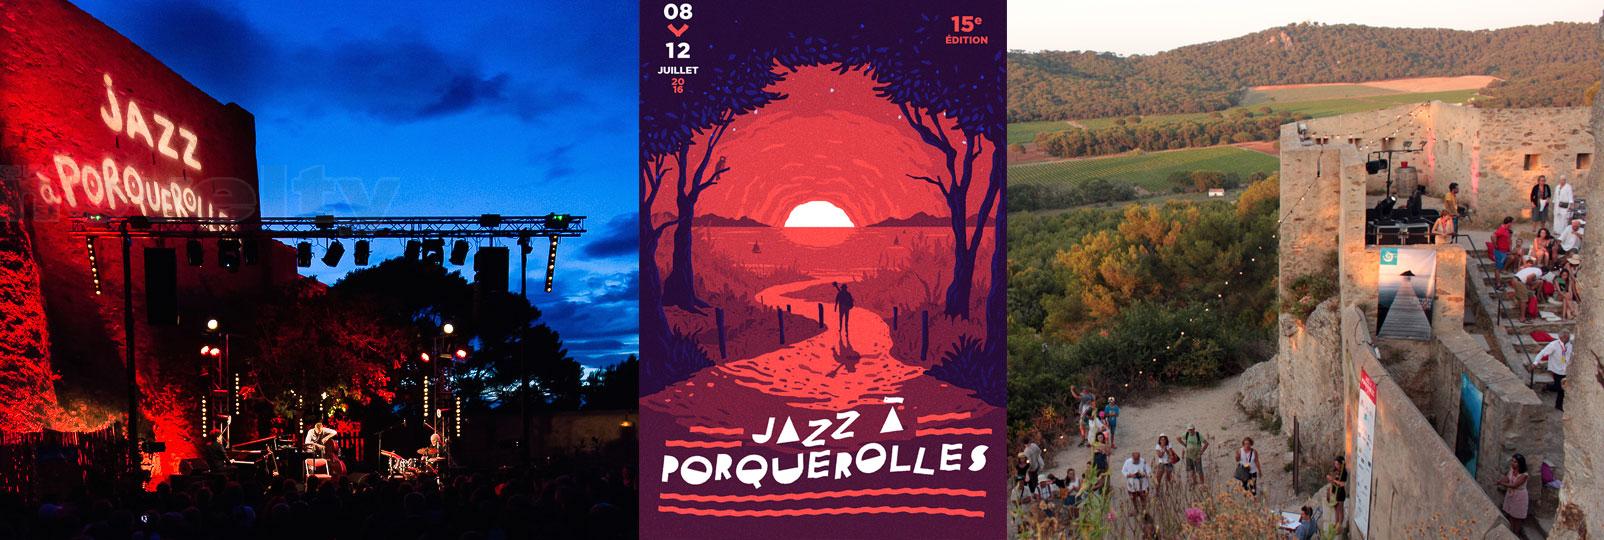 Visuel NOVELTY Azur mécène du Festival Jazz à Porquerolles 2016